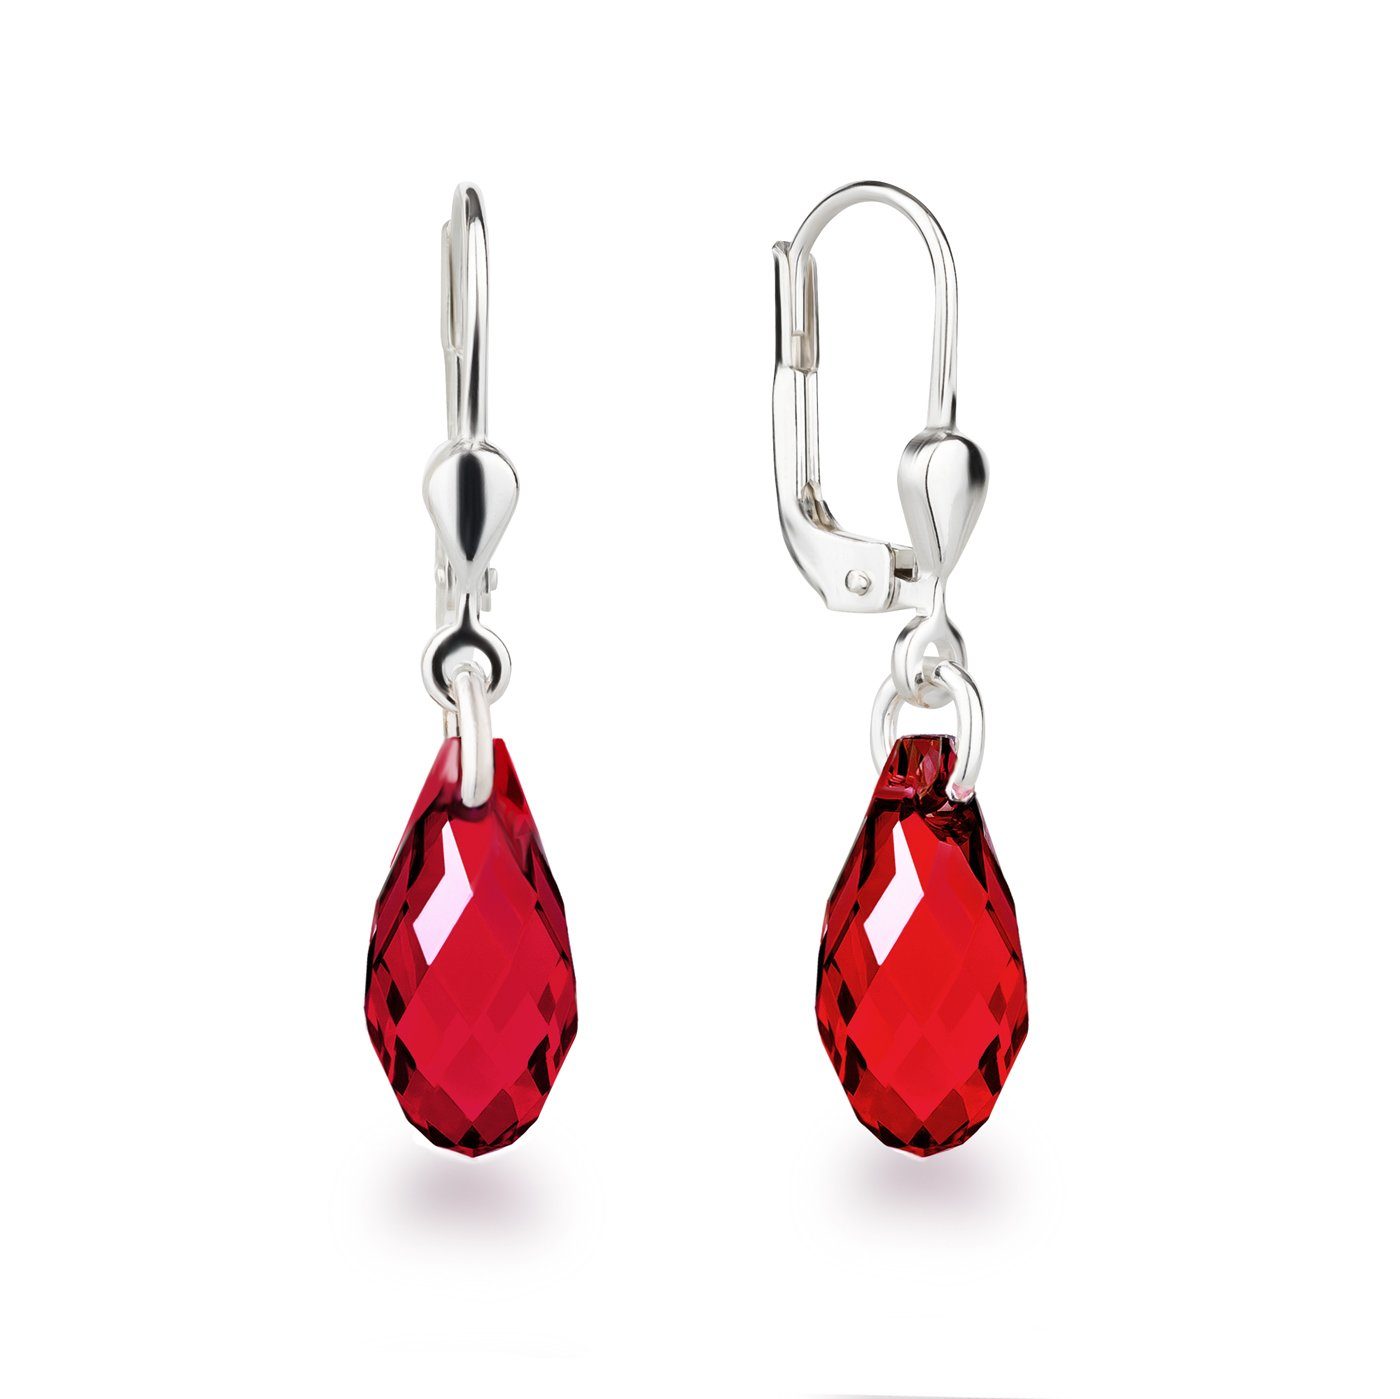 Rote Ohrringe für Damen online kaufen | OTTO